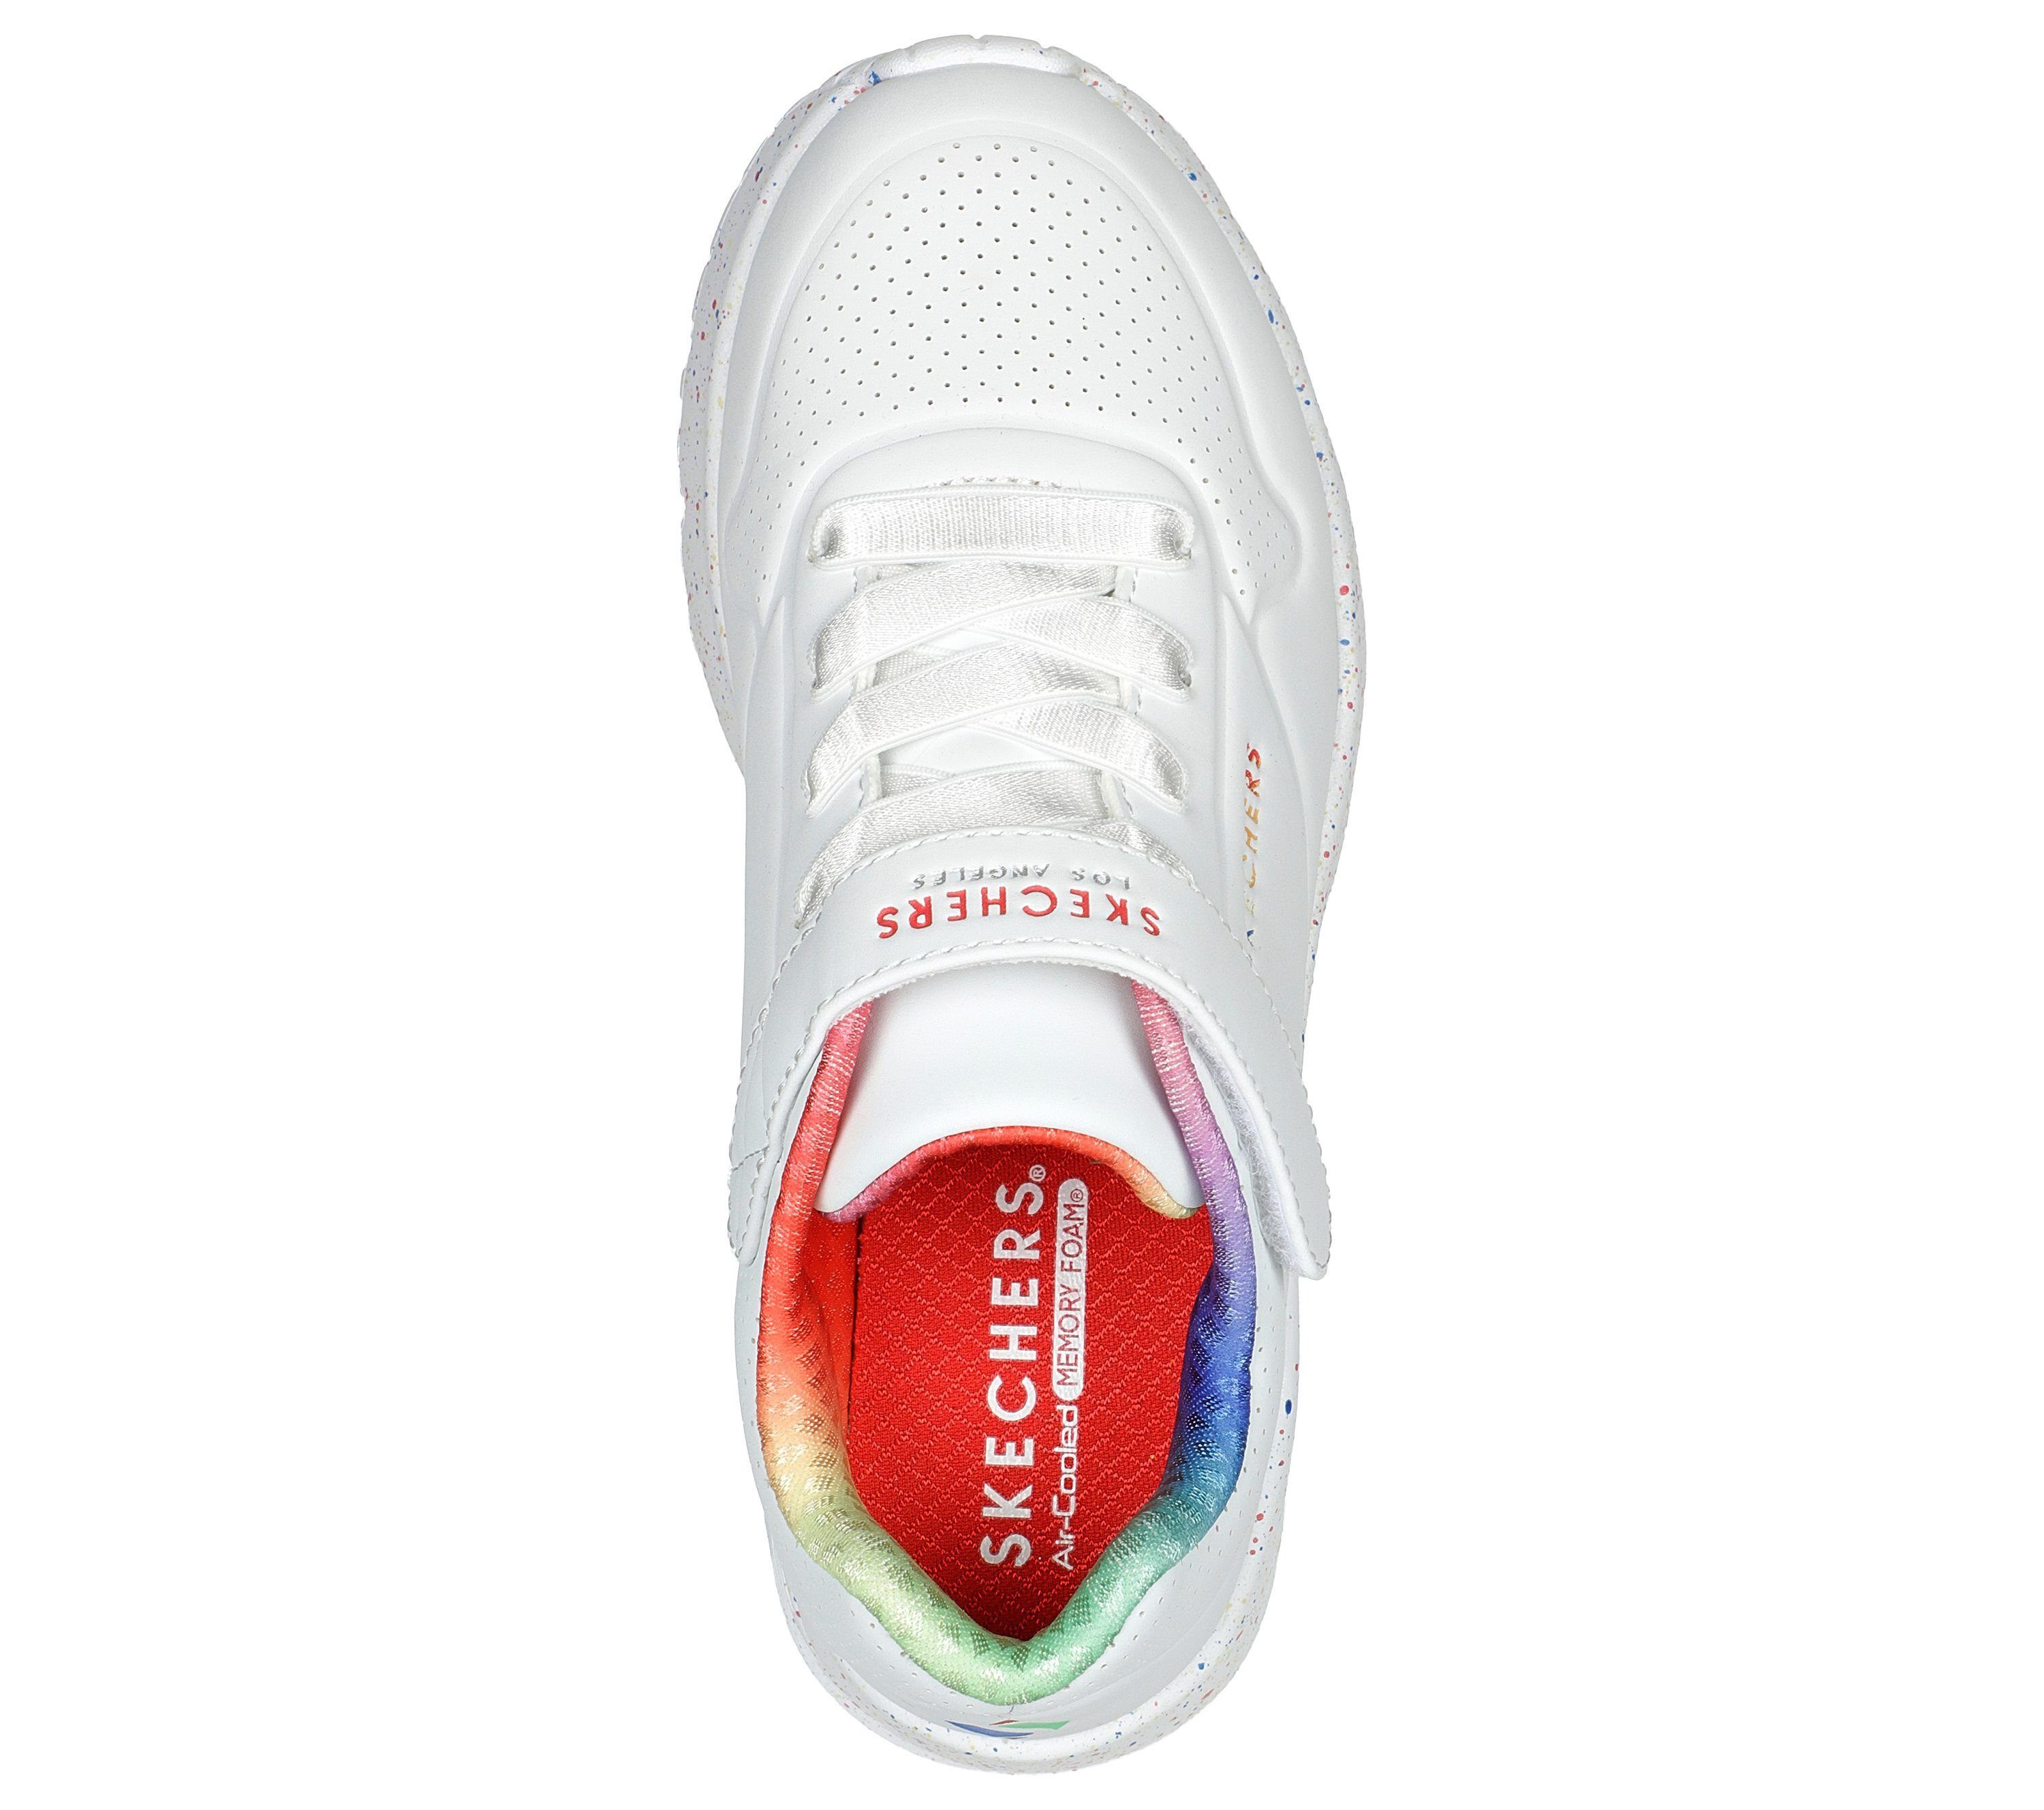 Sneaker Specks Rainbow Skechers